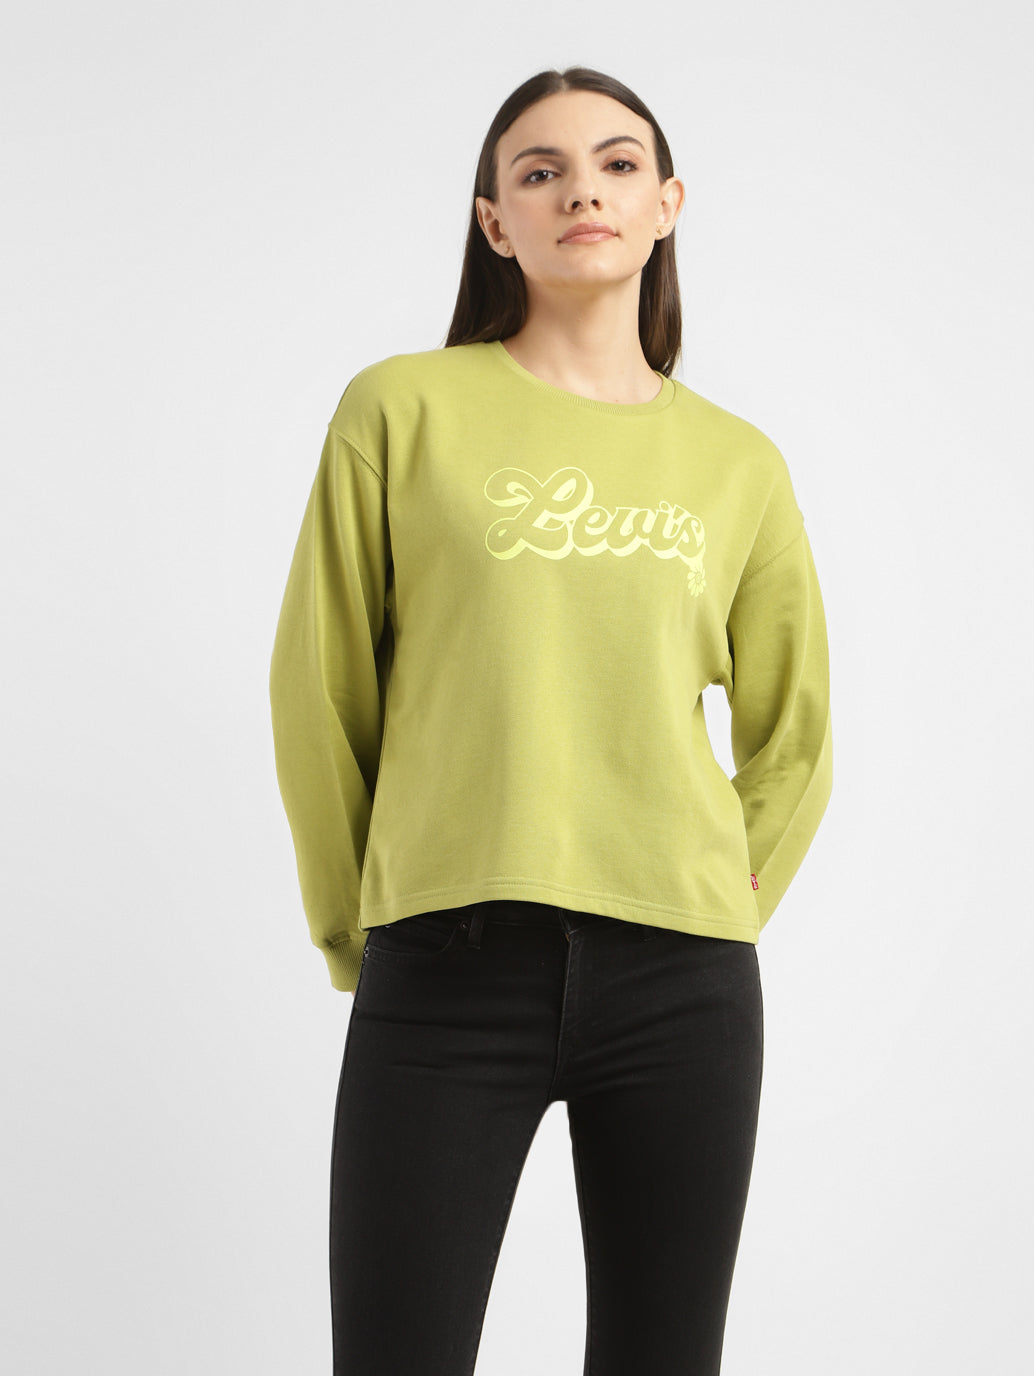 Women's Graphic Print Green Crew Neck Sweatshirt